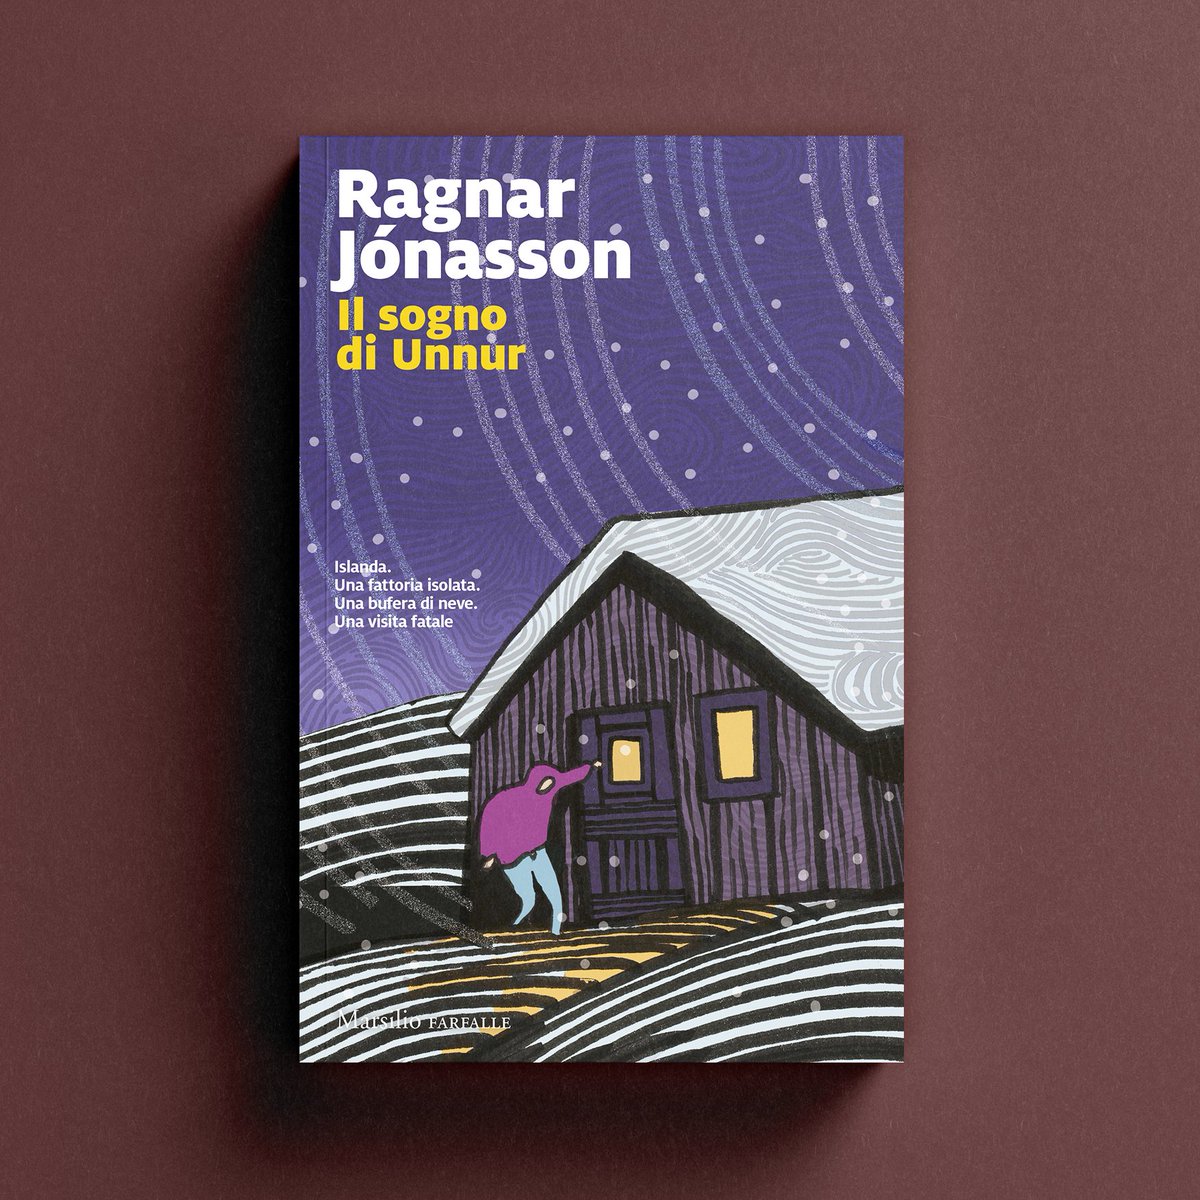 Il terzo episodio della Trilogia di Hulda è in libreria! ✍️ Ragnar Jónasson 📖 Il sogno di Unnur bit.ly/IlsognodiUnnur #Marsilio #farfalle #ilSognodiUnnur #RagnarJónasson @ragnarjo @flaviavadrucci